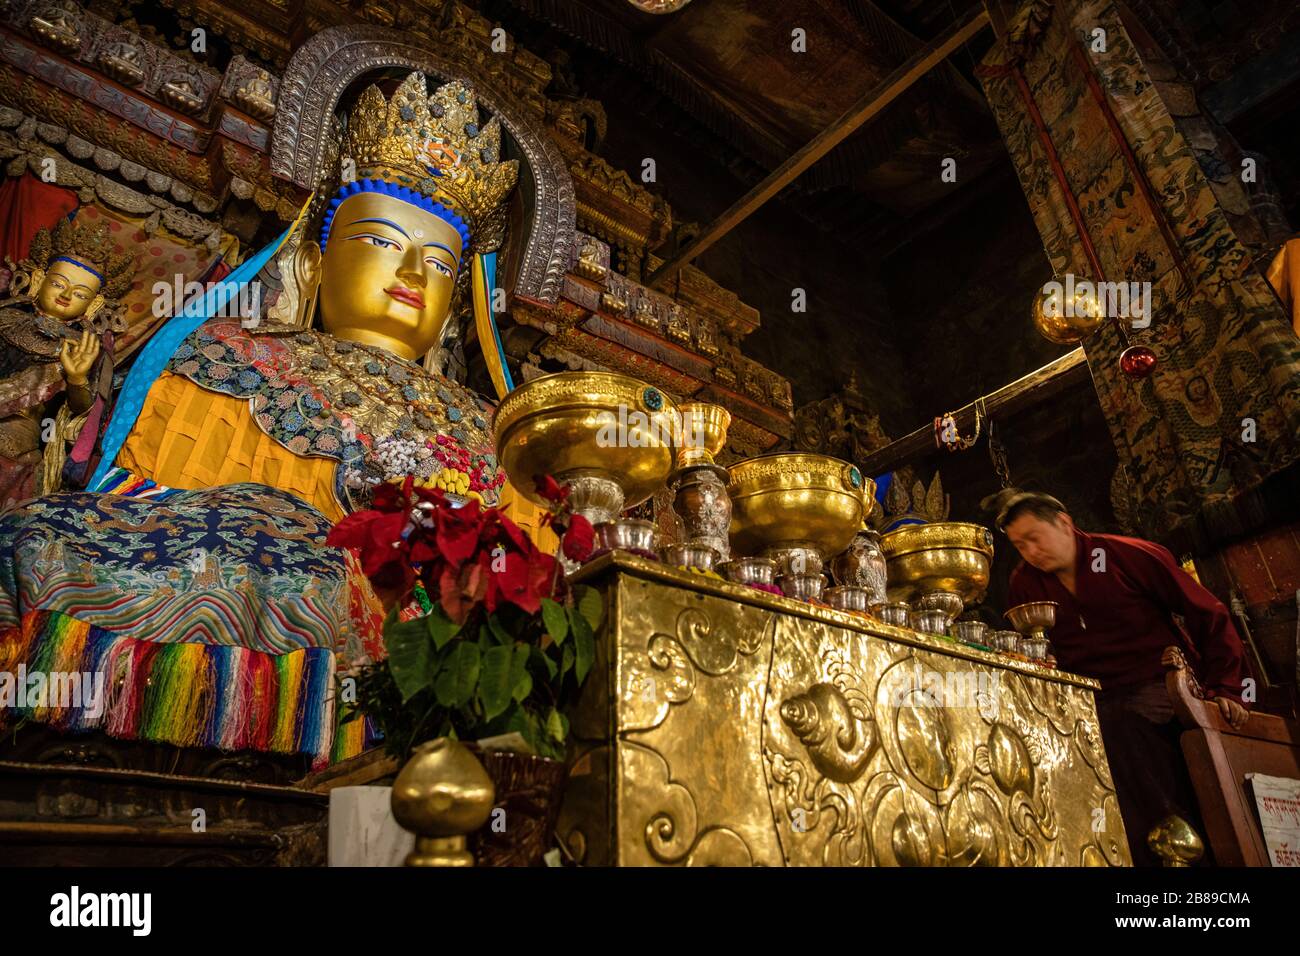 Estatuas de Buda en el complejo Pelkor Chode monasterios y templos en Gyangze, Tibet Foto de stock